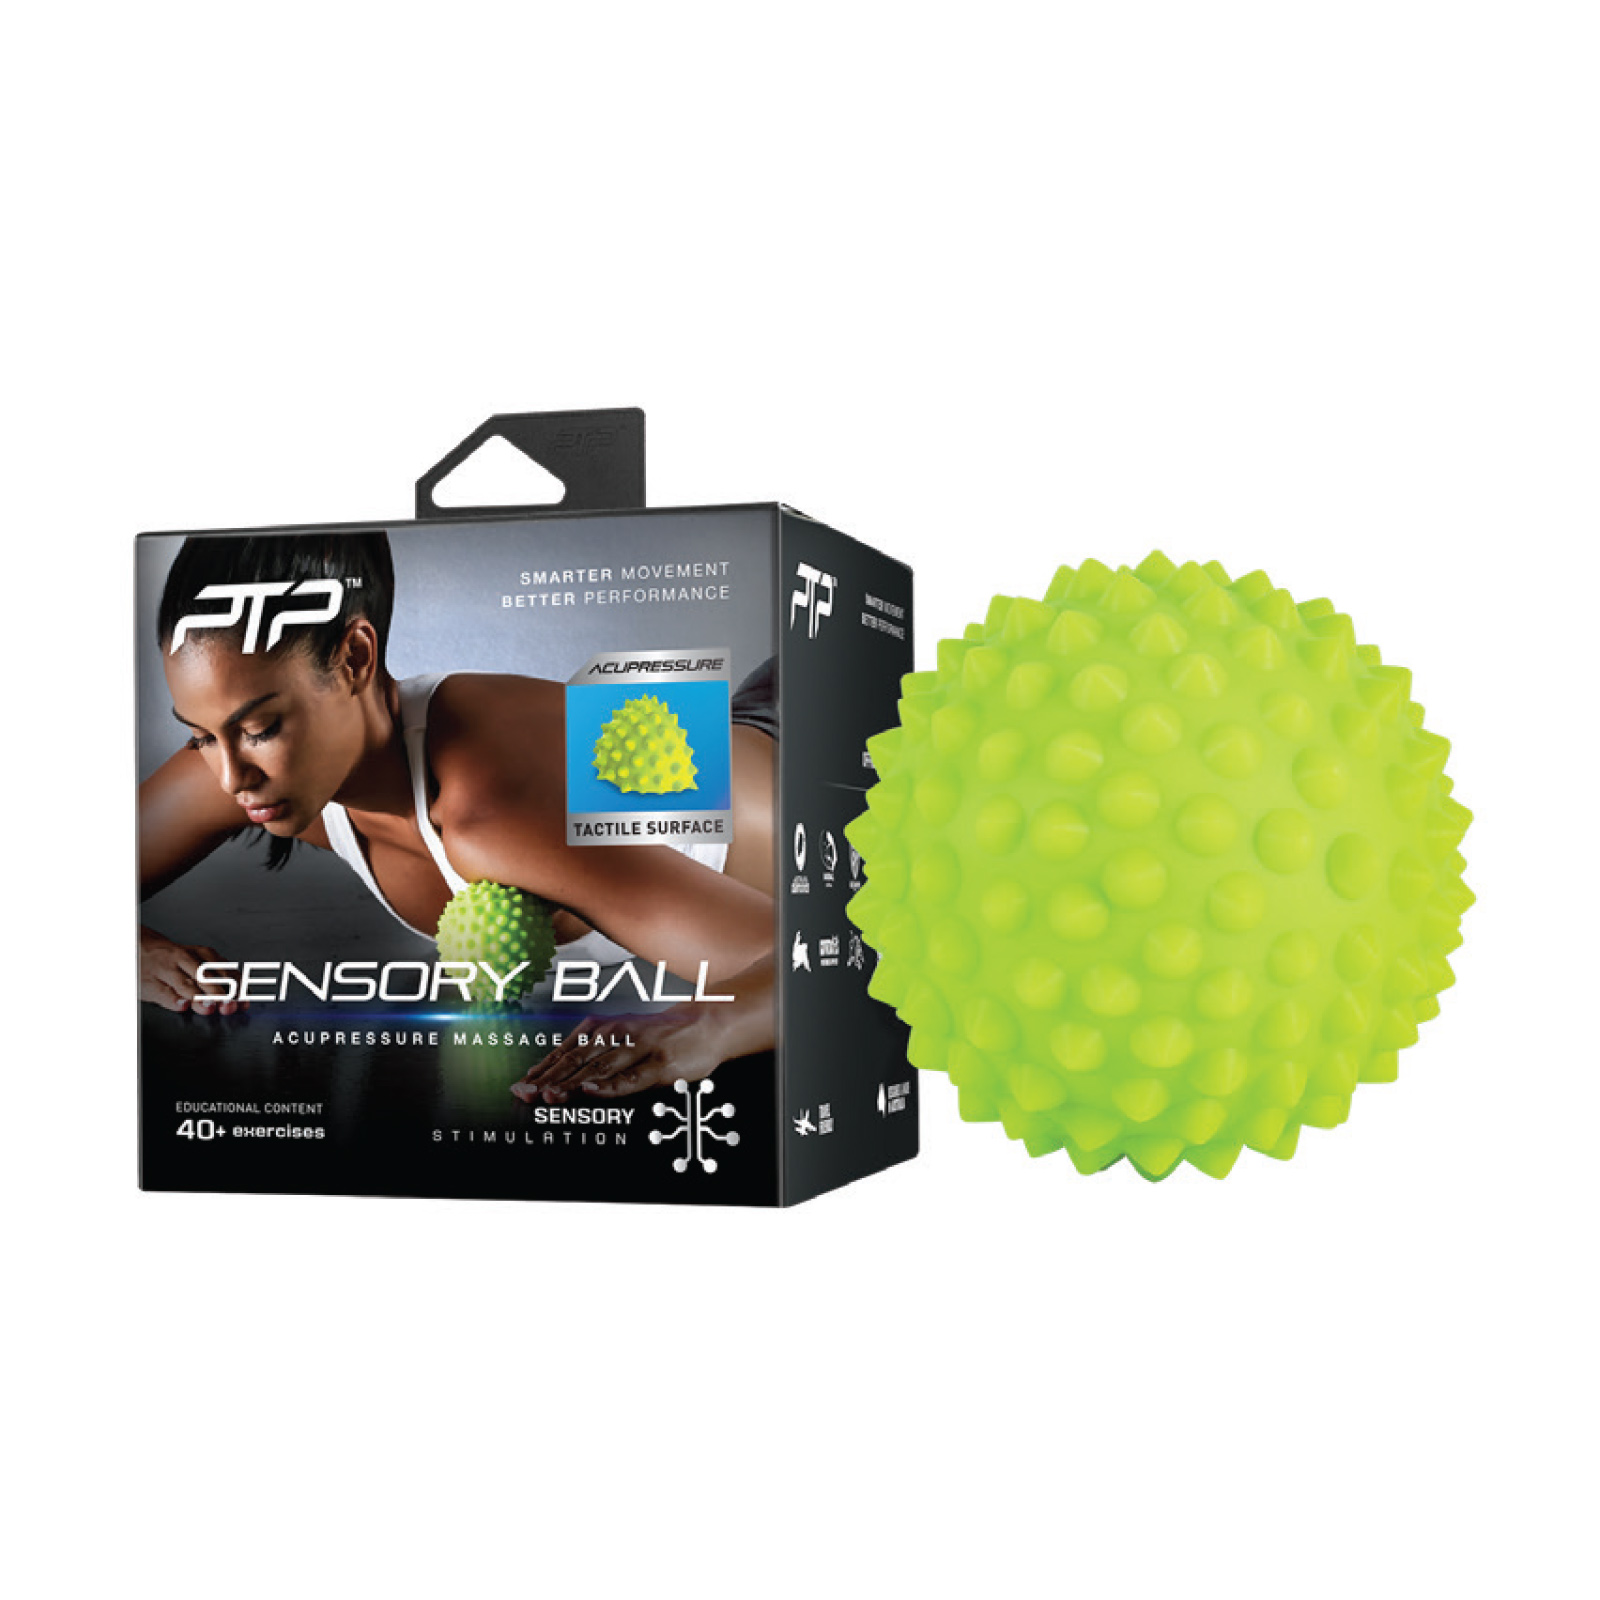 Sensory Ball Acupressure Massage Ball